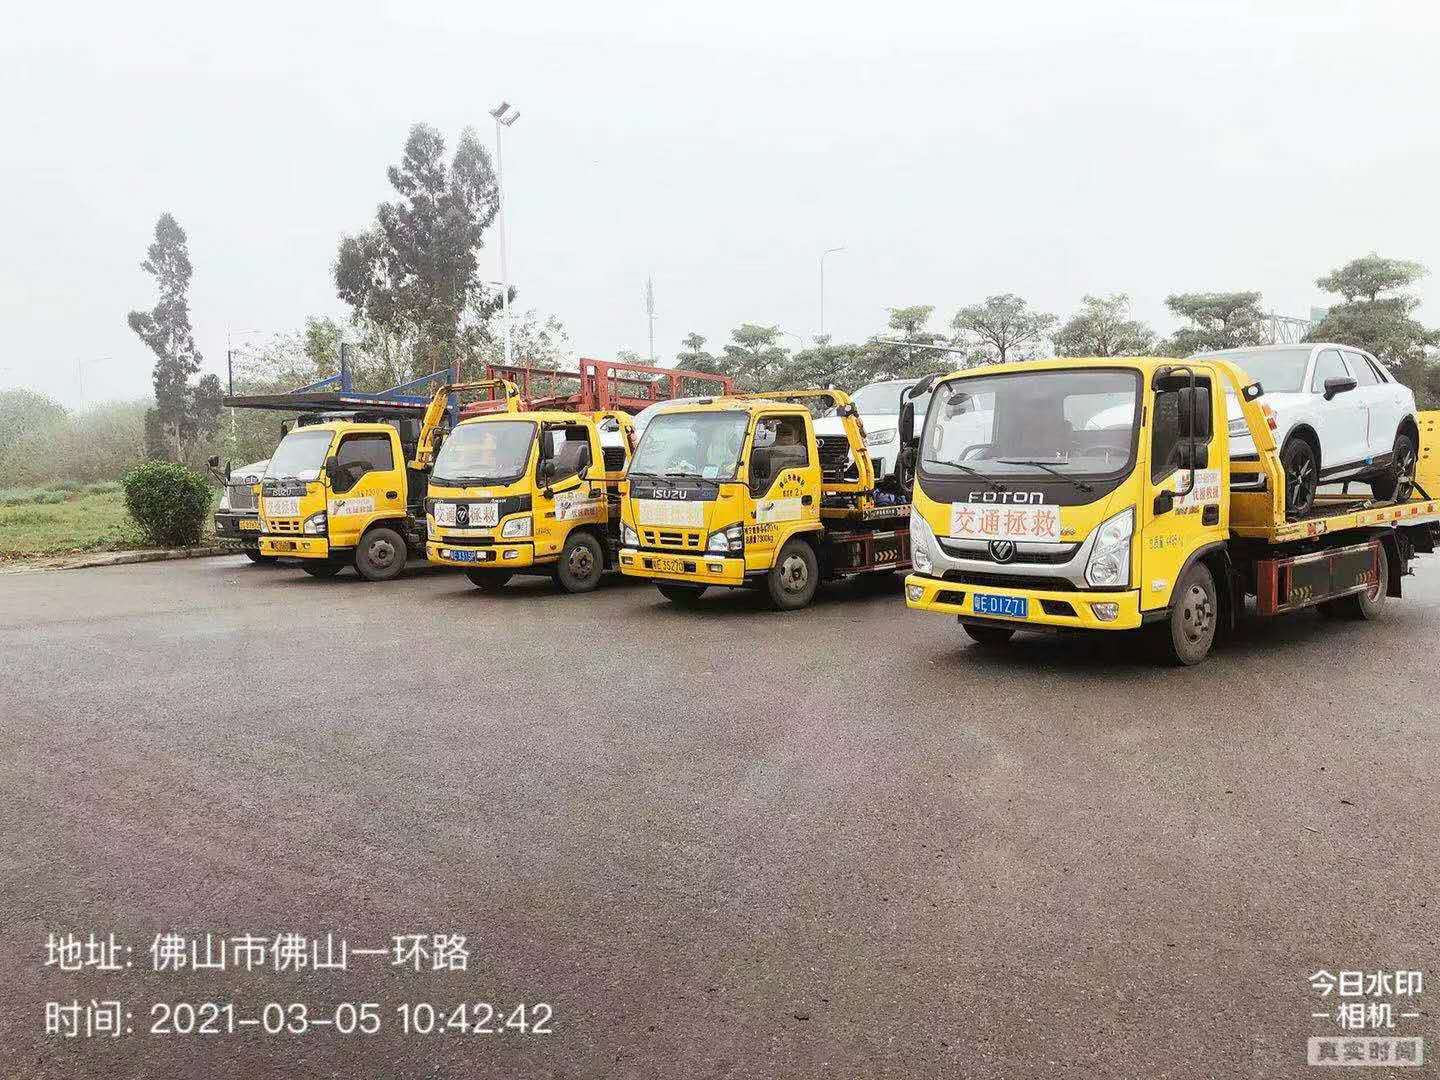 佛山汽车拖车服务 拖车救援服务电话图片